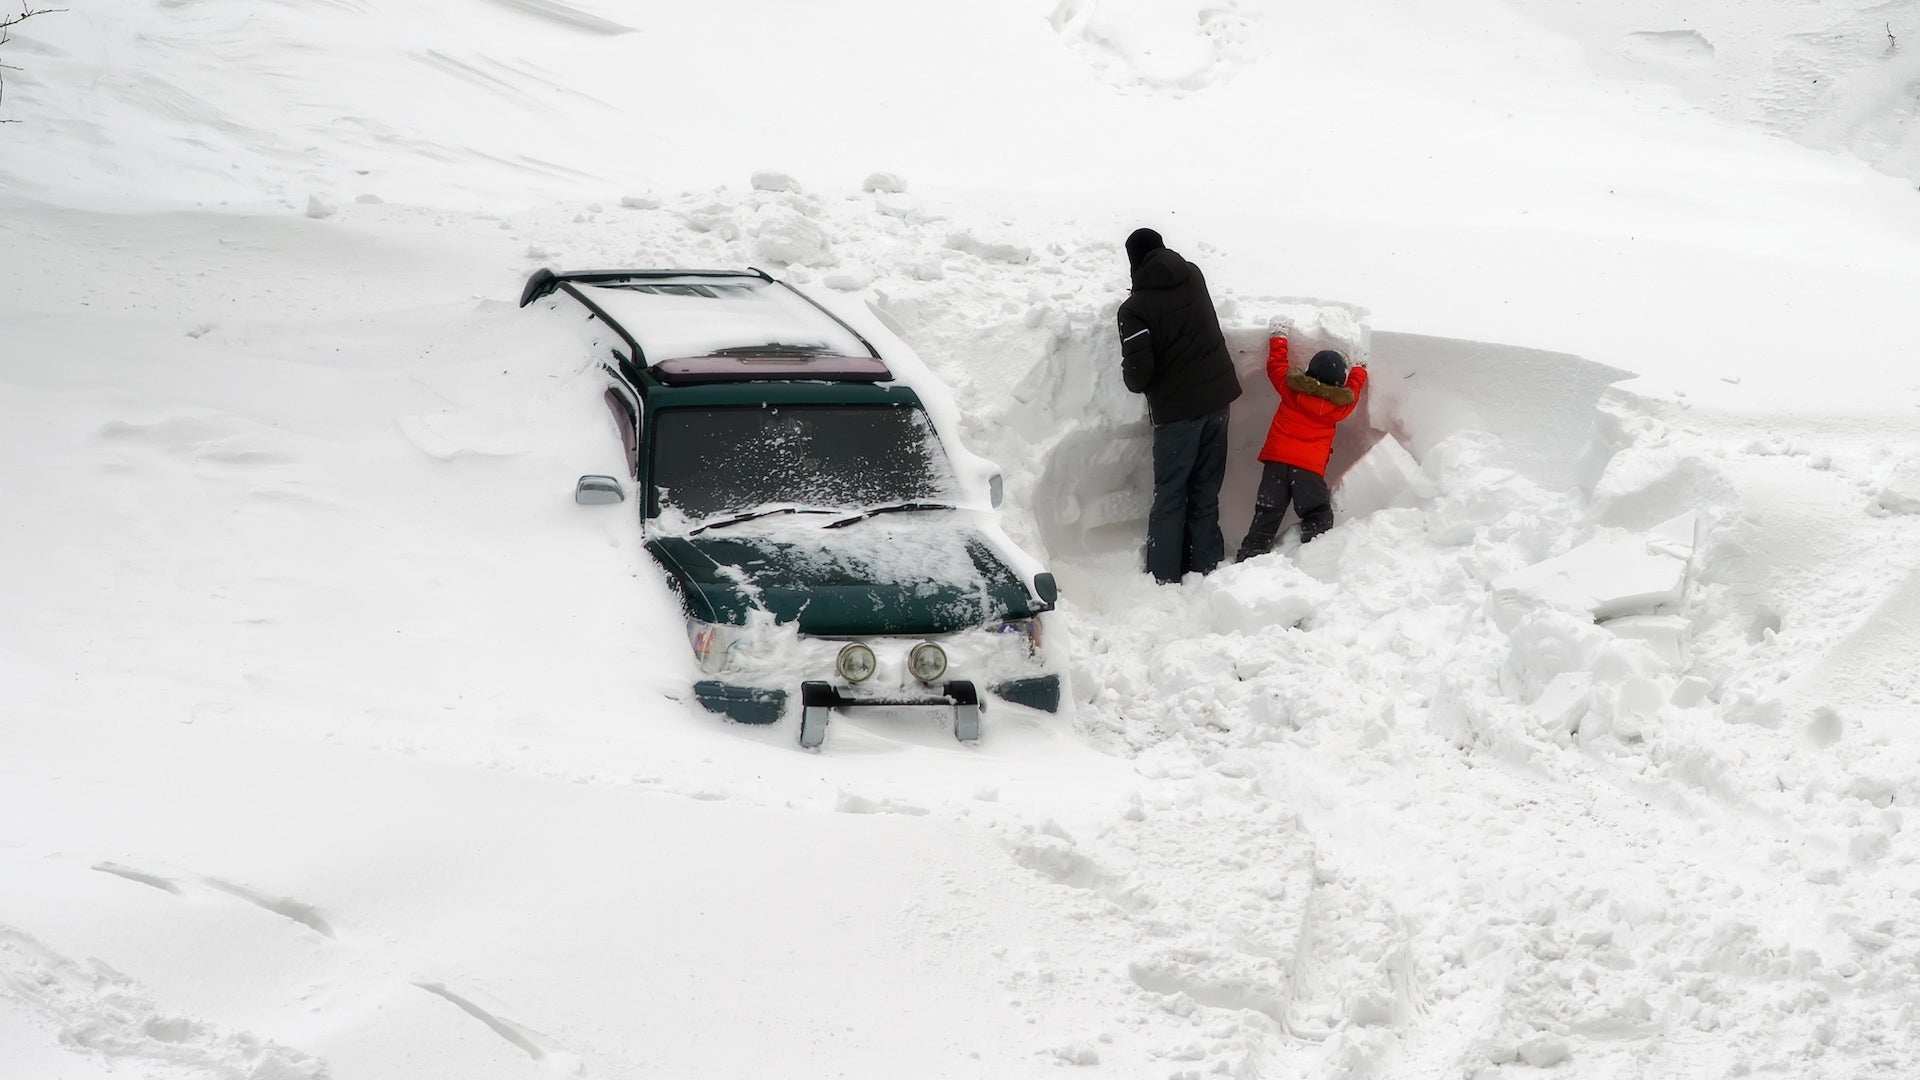 22 People Die in Pakistan Being Trapped in Snowfall